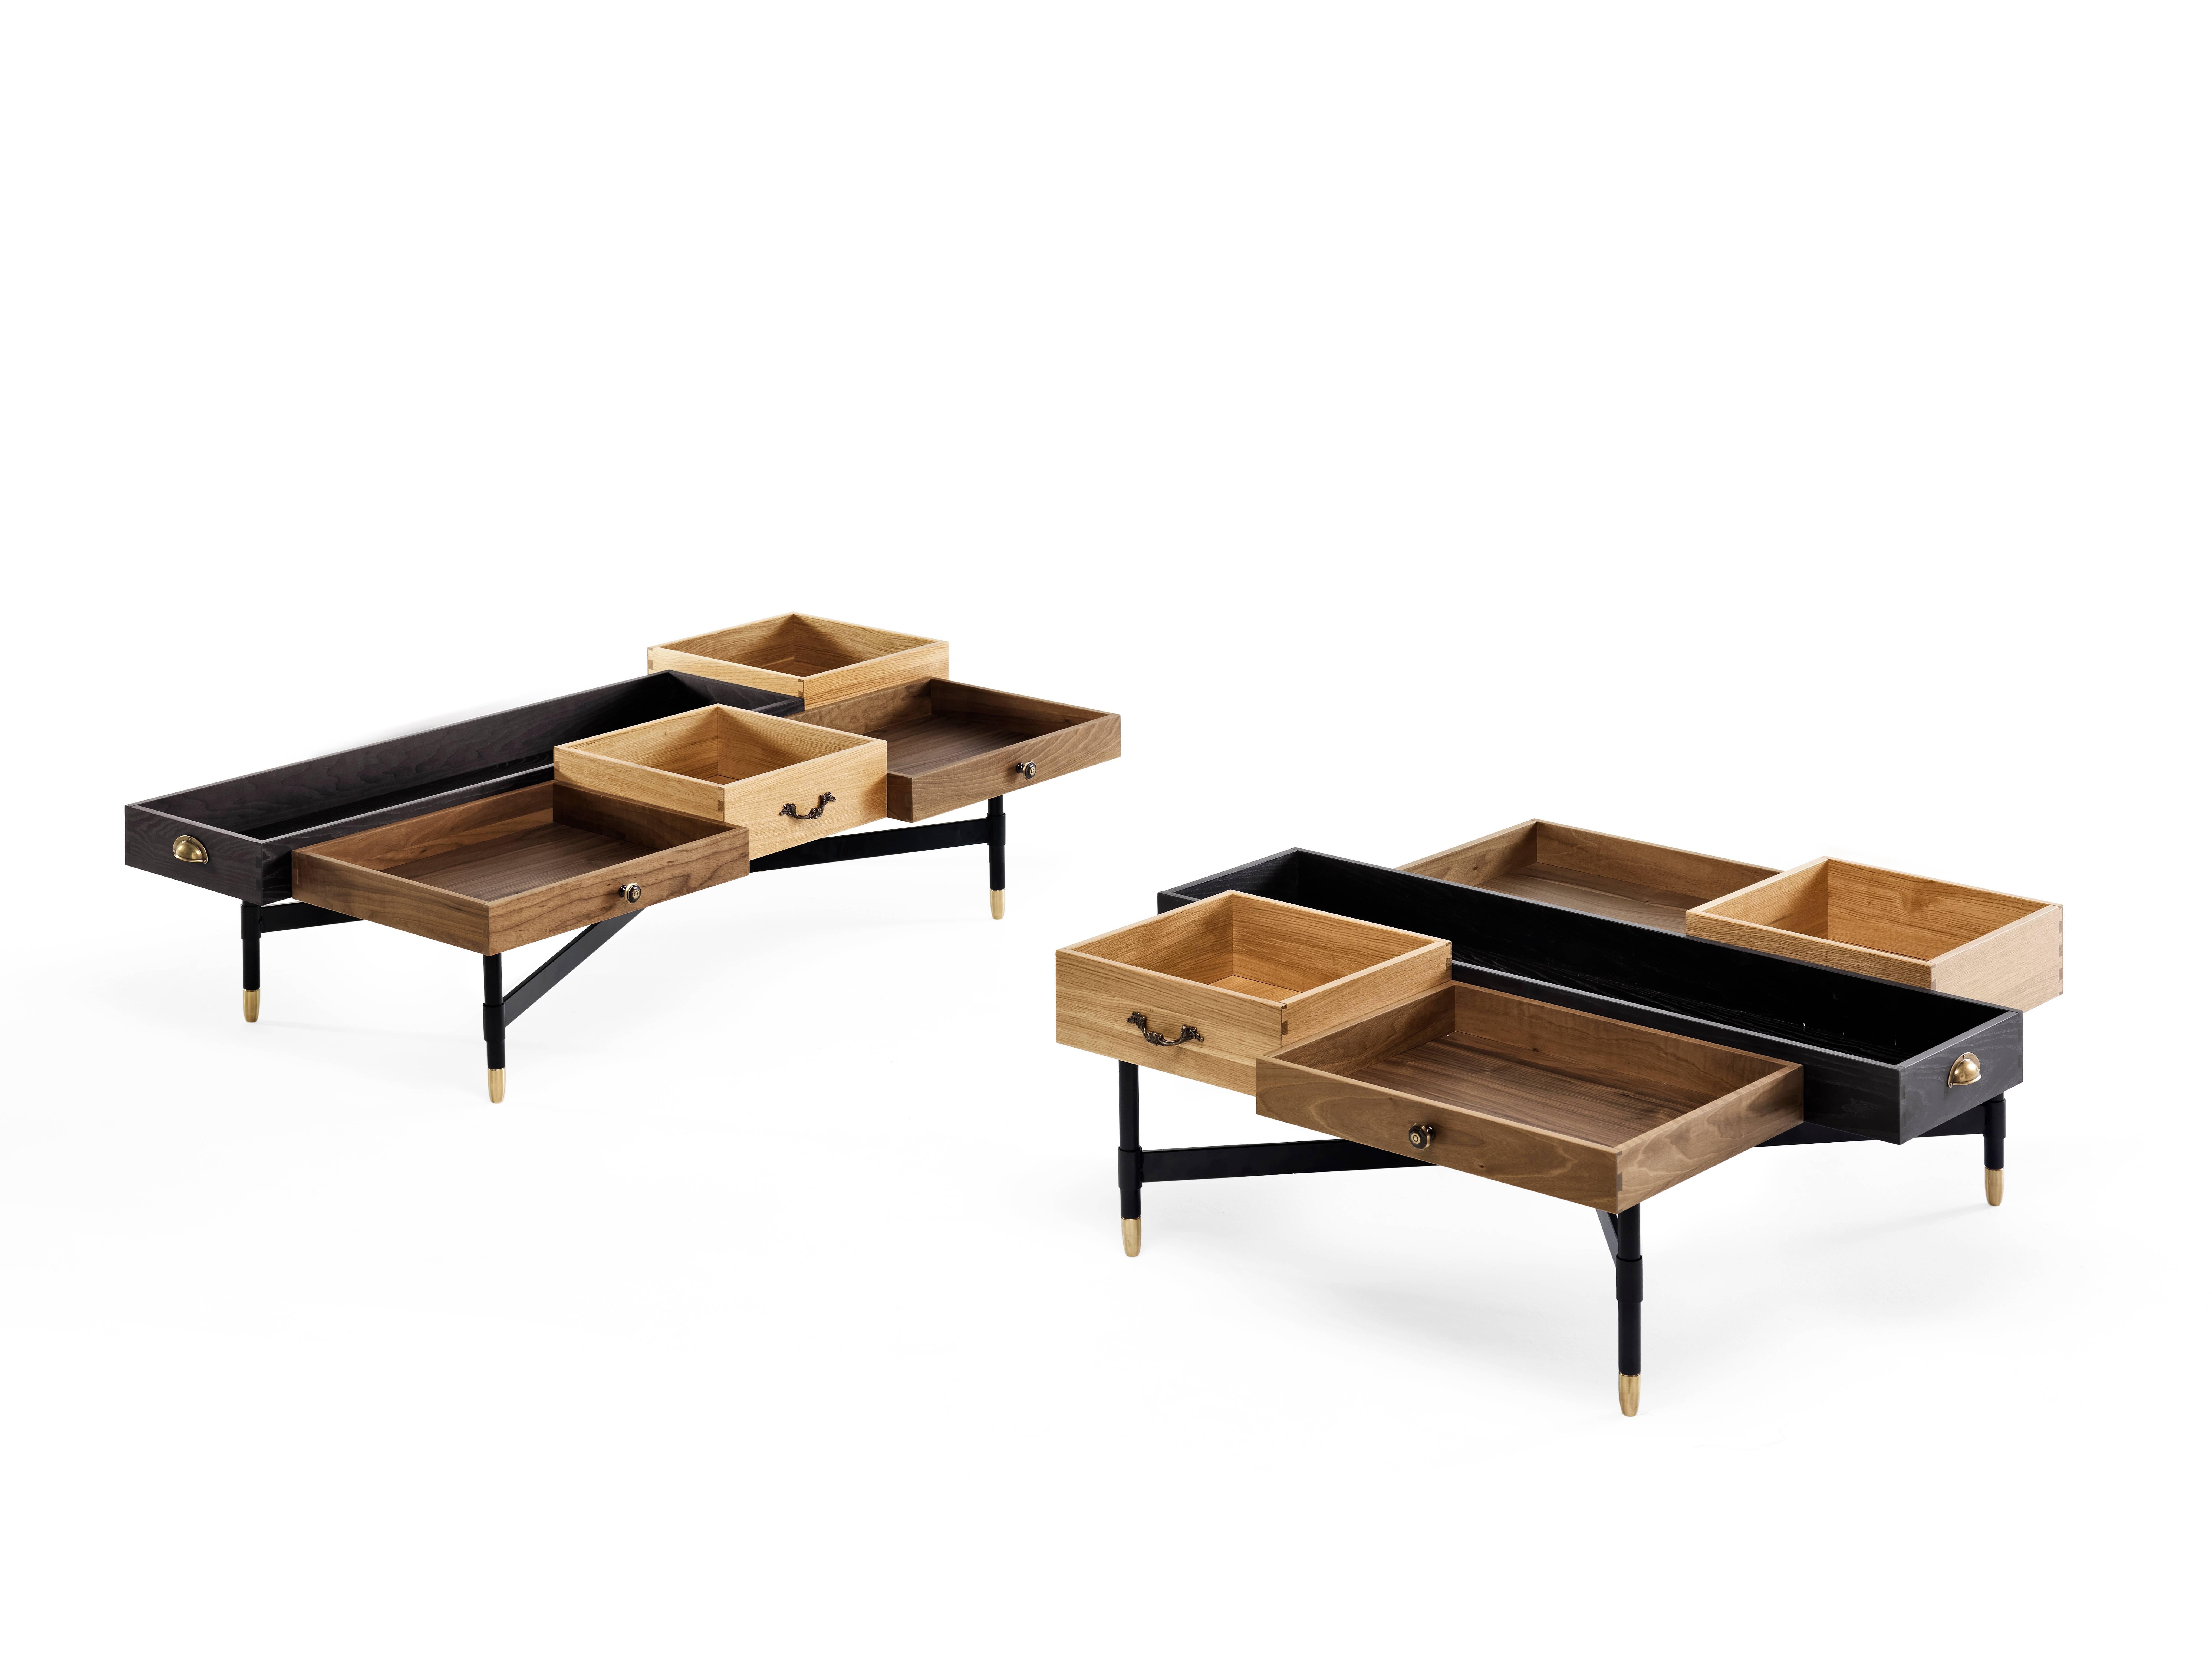 The Dreamers est une table basse conçue par Uto Balmoral pour Mogg, réalisée en noyer, frêne et chêne massif. The Dreamers sont une paire de tables basses composées de tiroirs, l'idée de la création de ces tables basses est basée sur la 